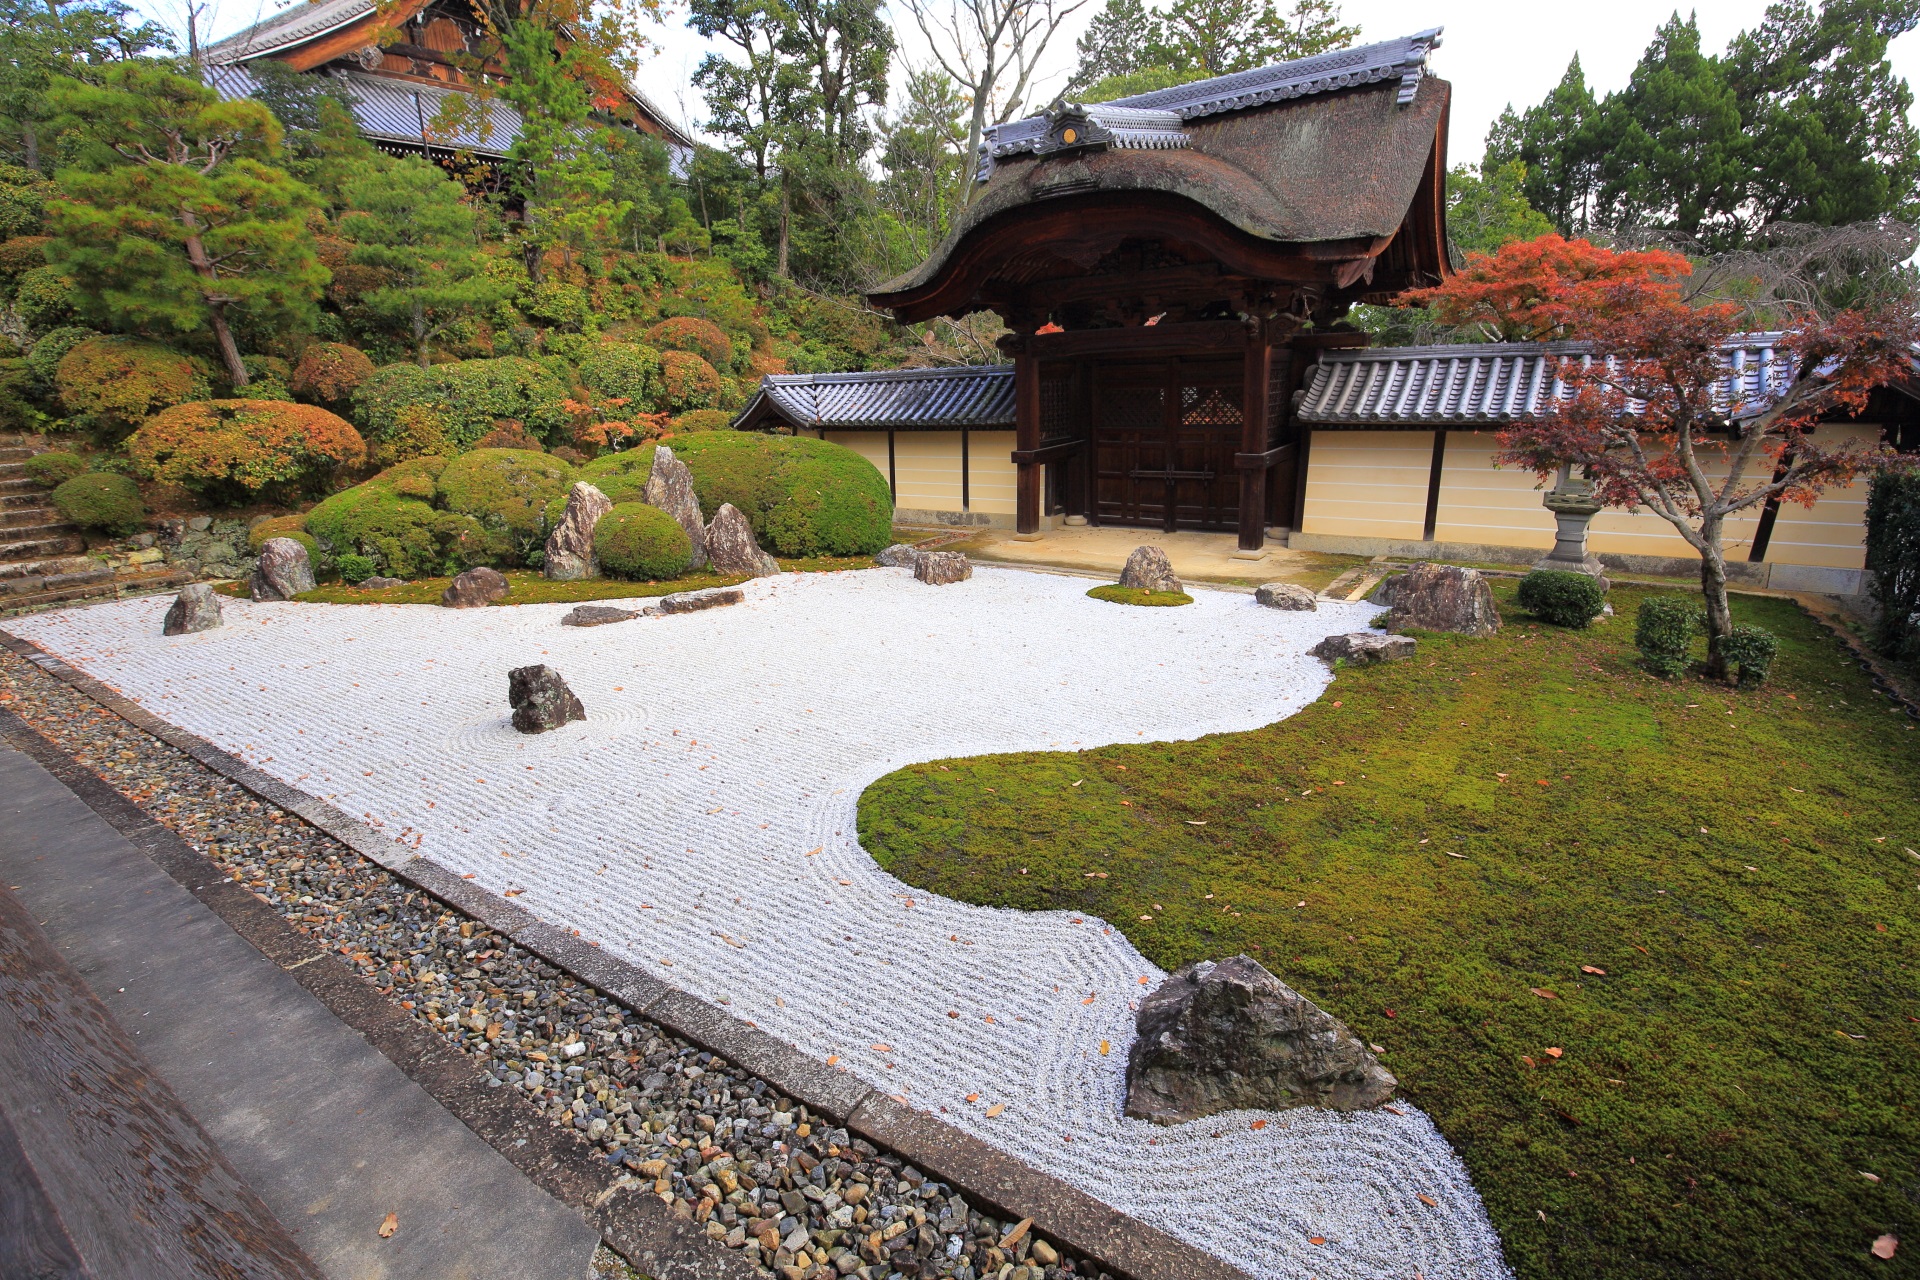 光明寺の苔と白砂に様々な大きさや形の岩が配された庭園